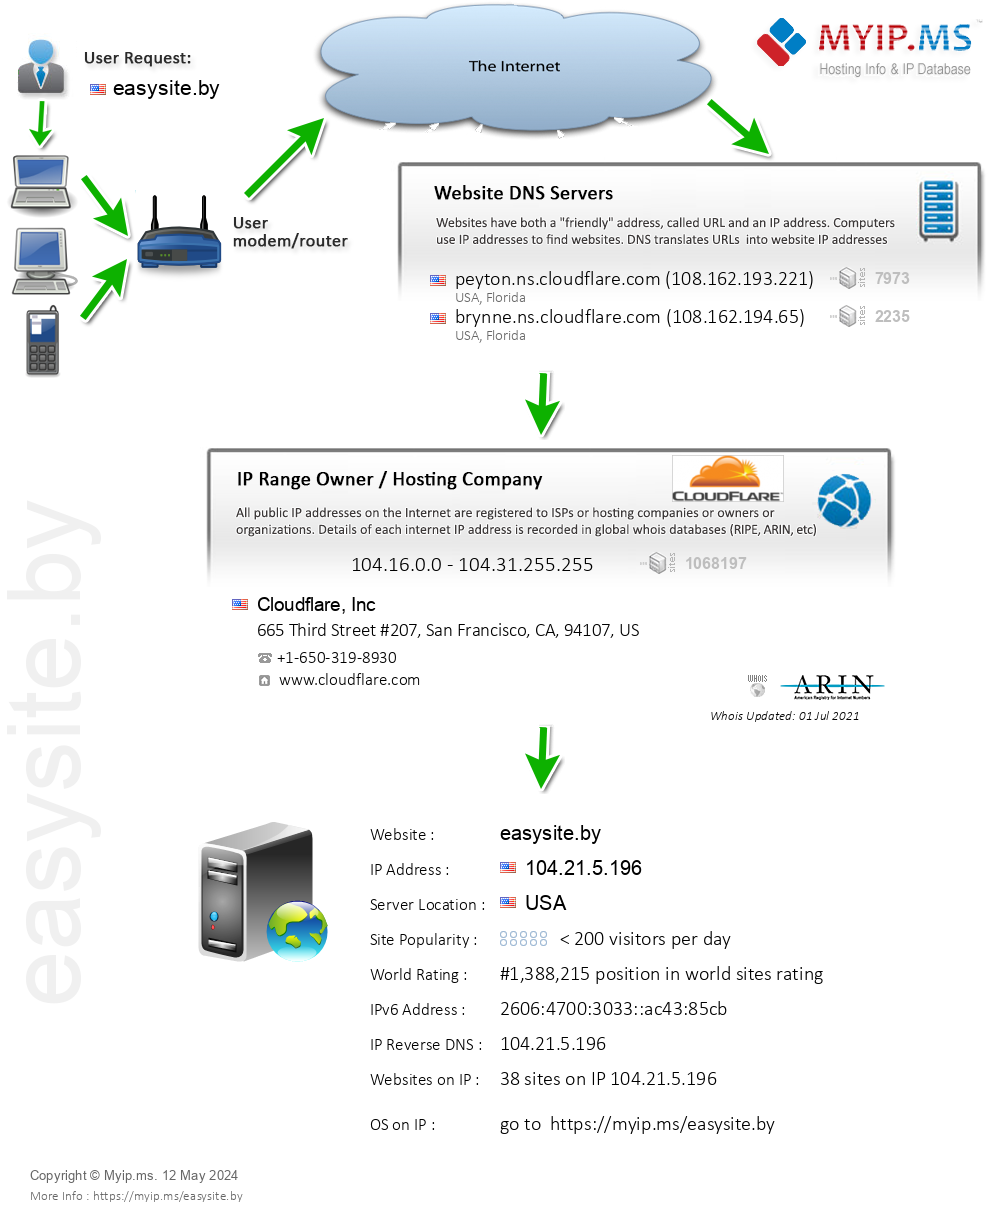 Easysite.by - Website Hosting Visual IP Diagram